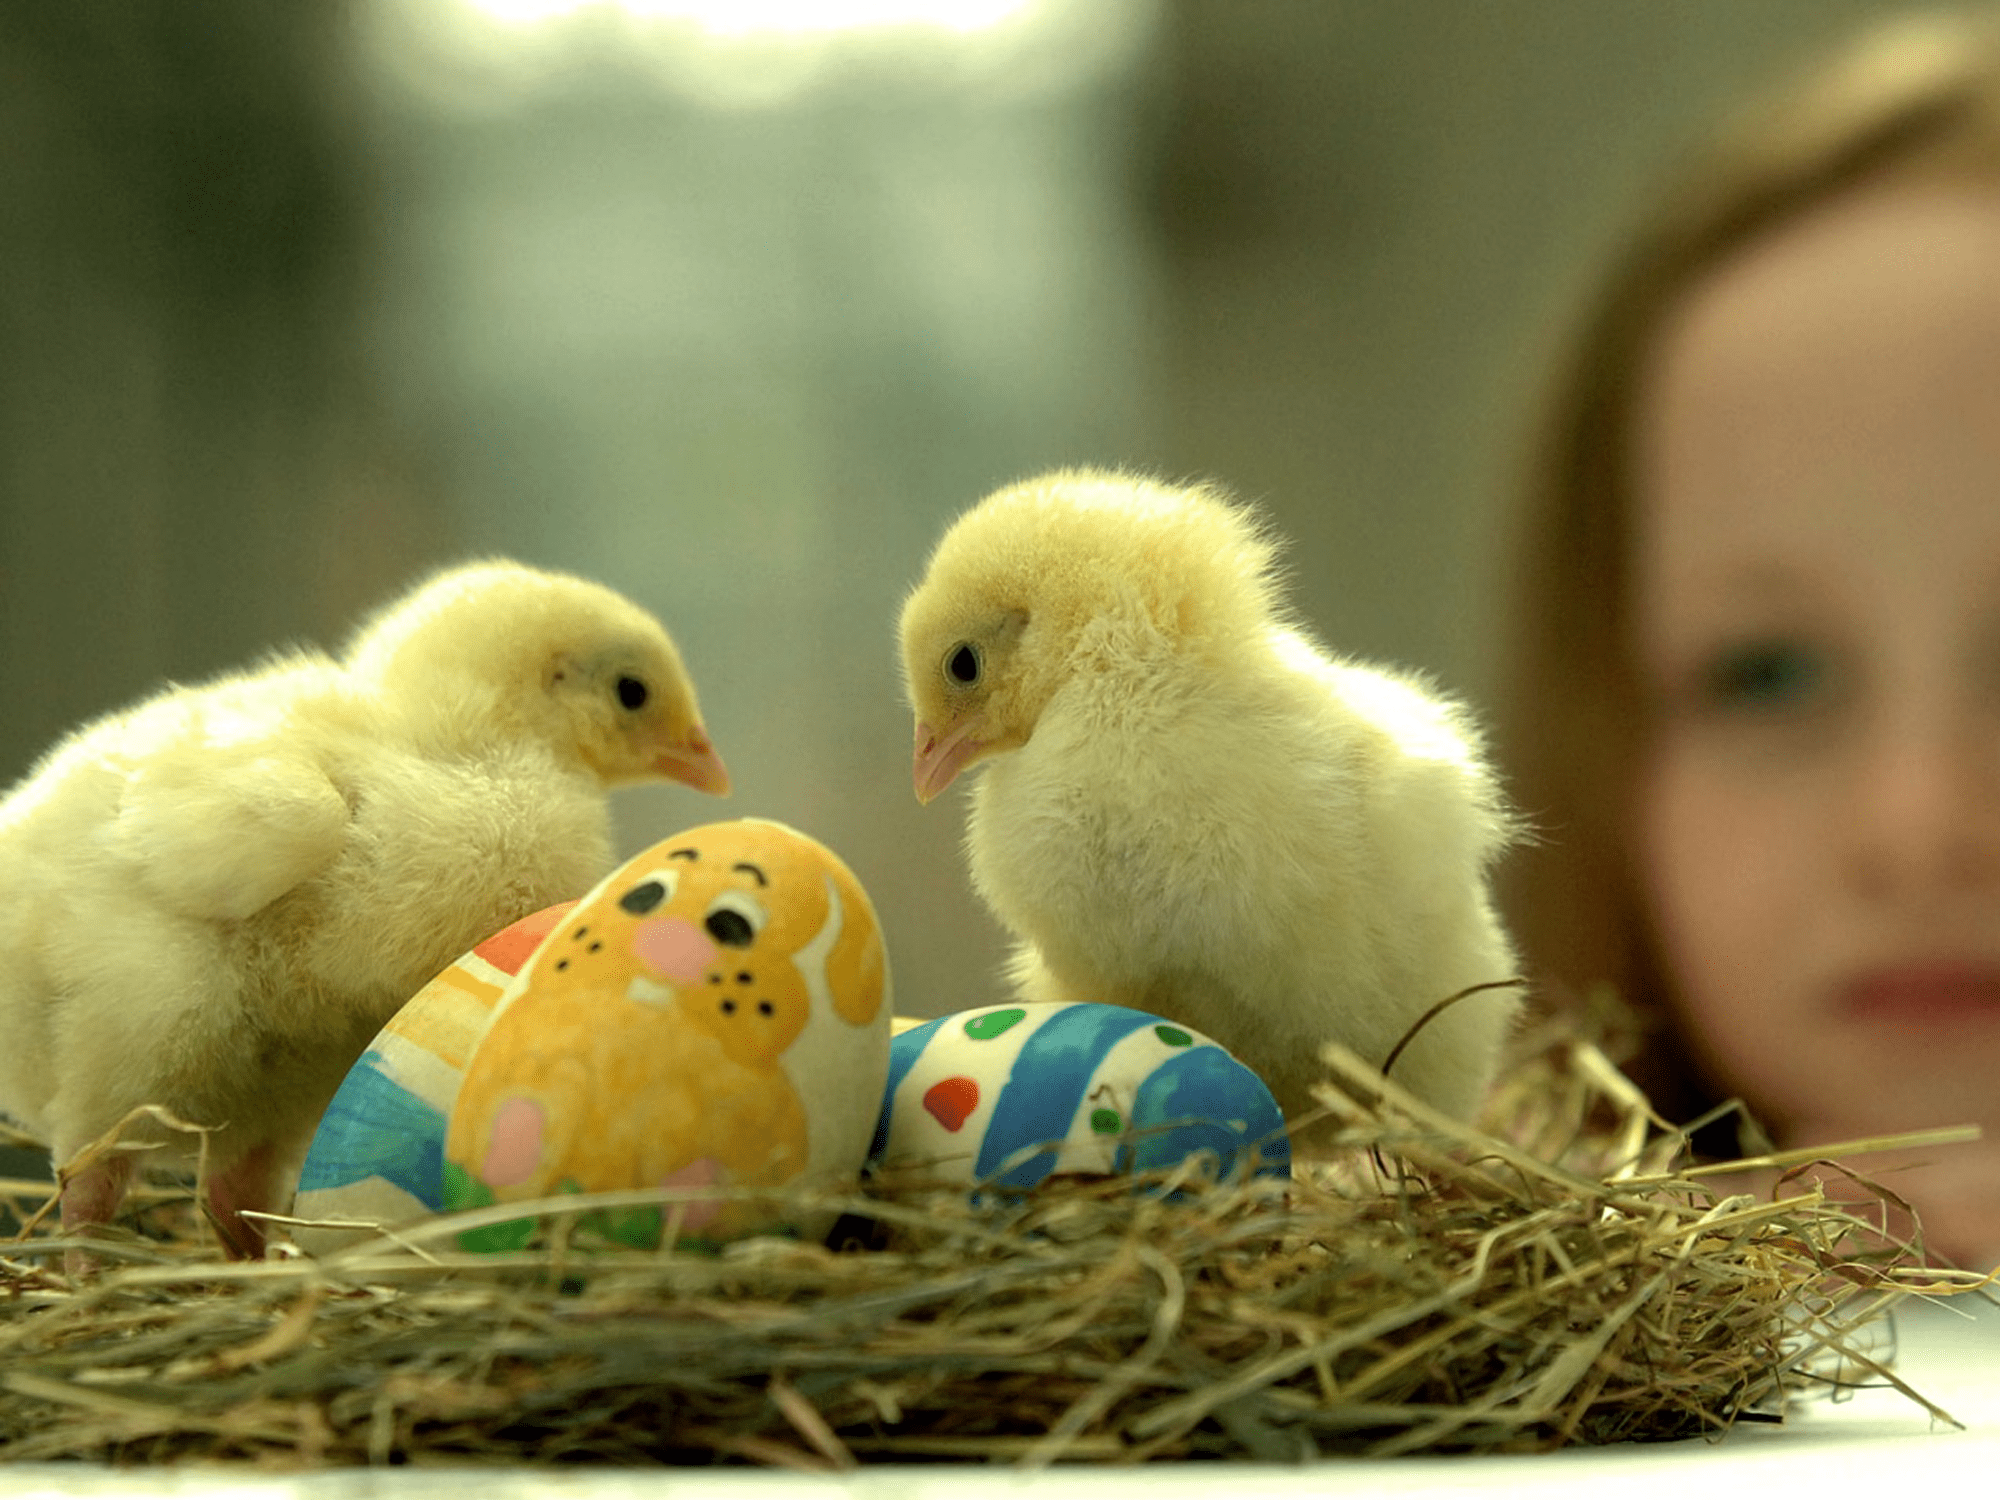 Zdarma velikonoční tapeta s mladou dívkou sledující dvě mláďata, jak sedí s velikonočními vejci